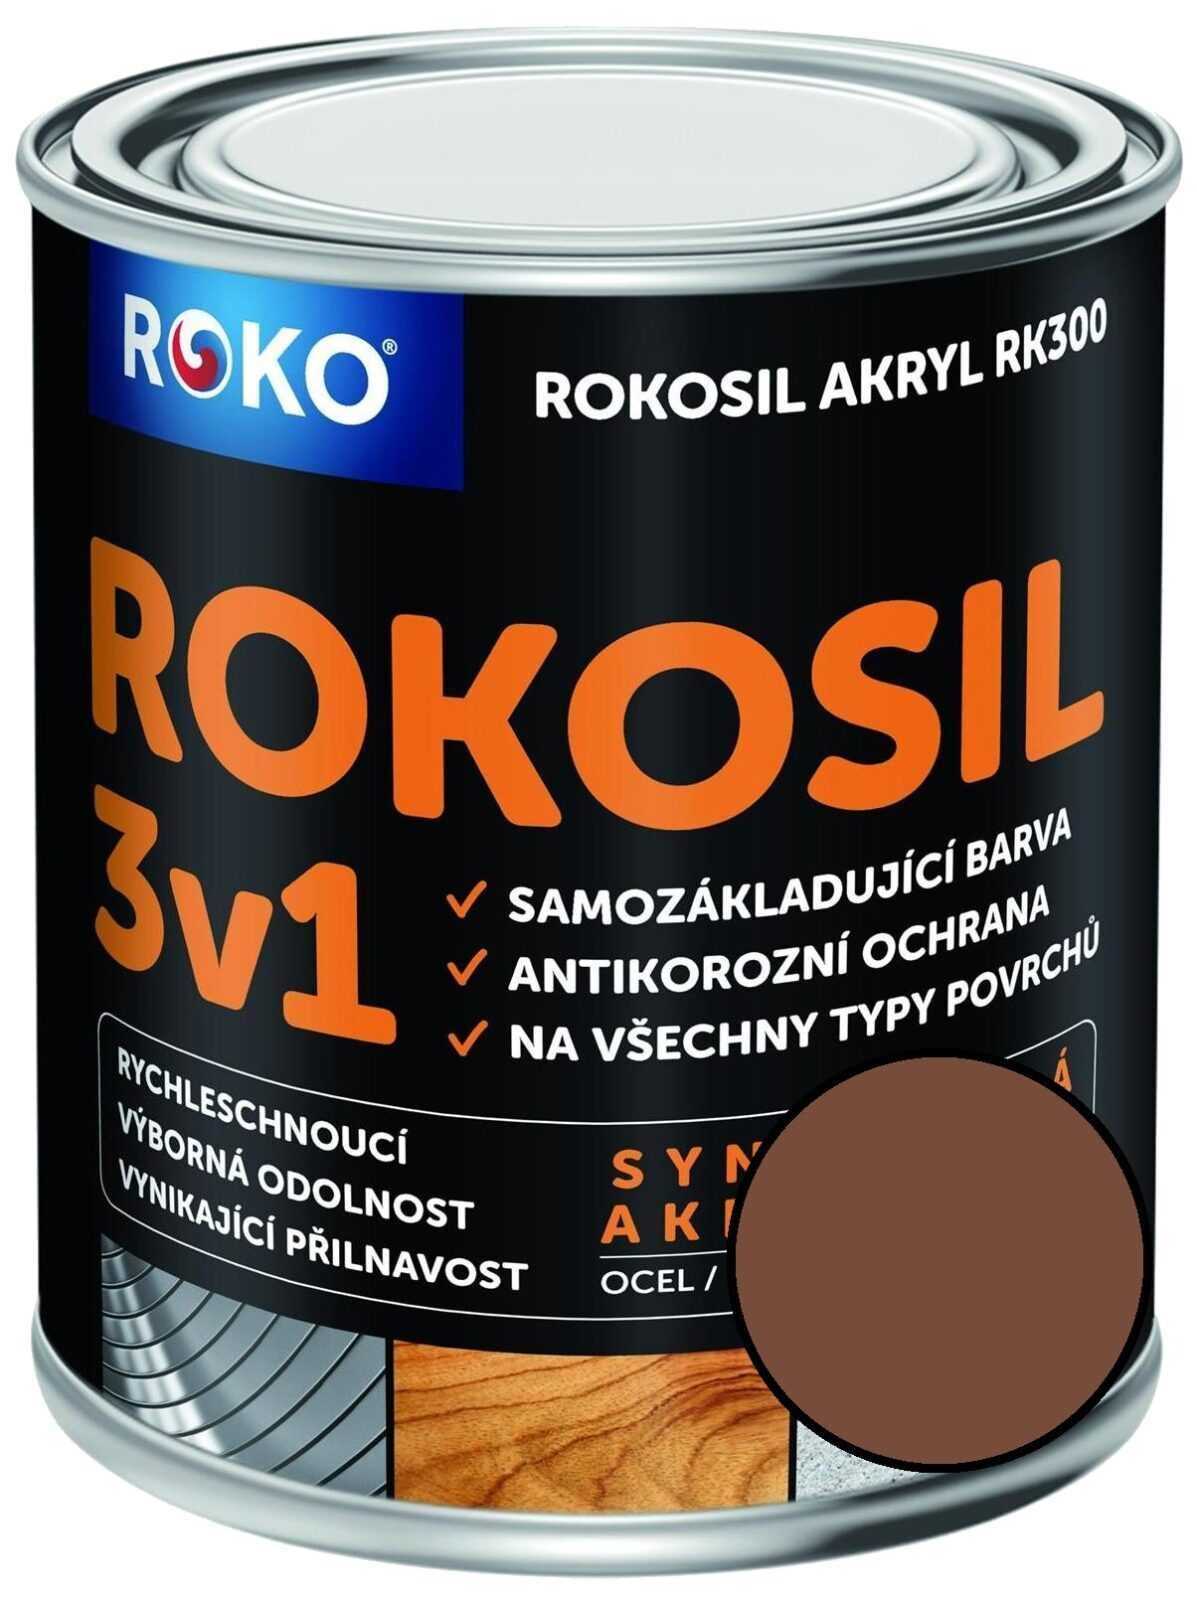 Barva samozákladující Rokosil akryl 3v1 RK 300 hnědá káv. 0